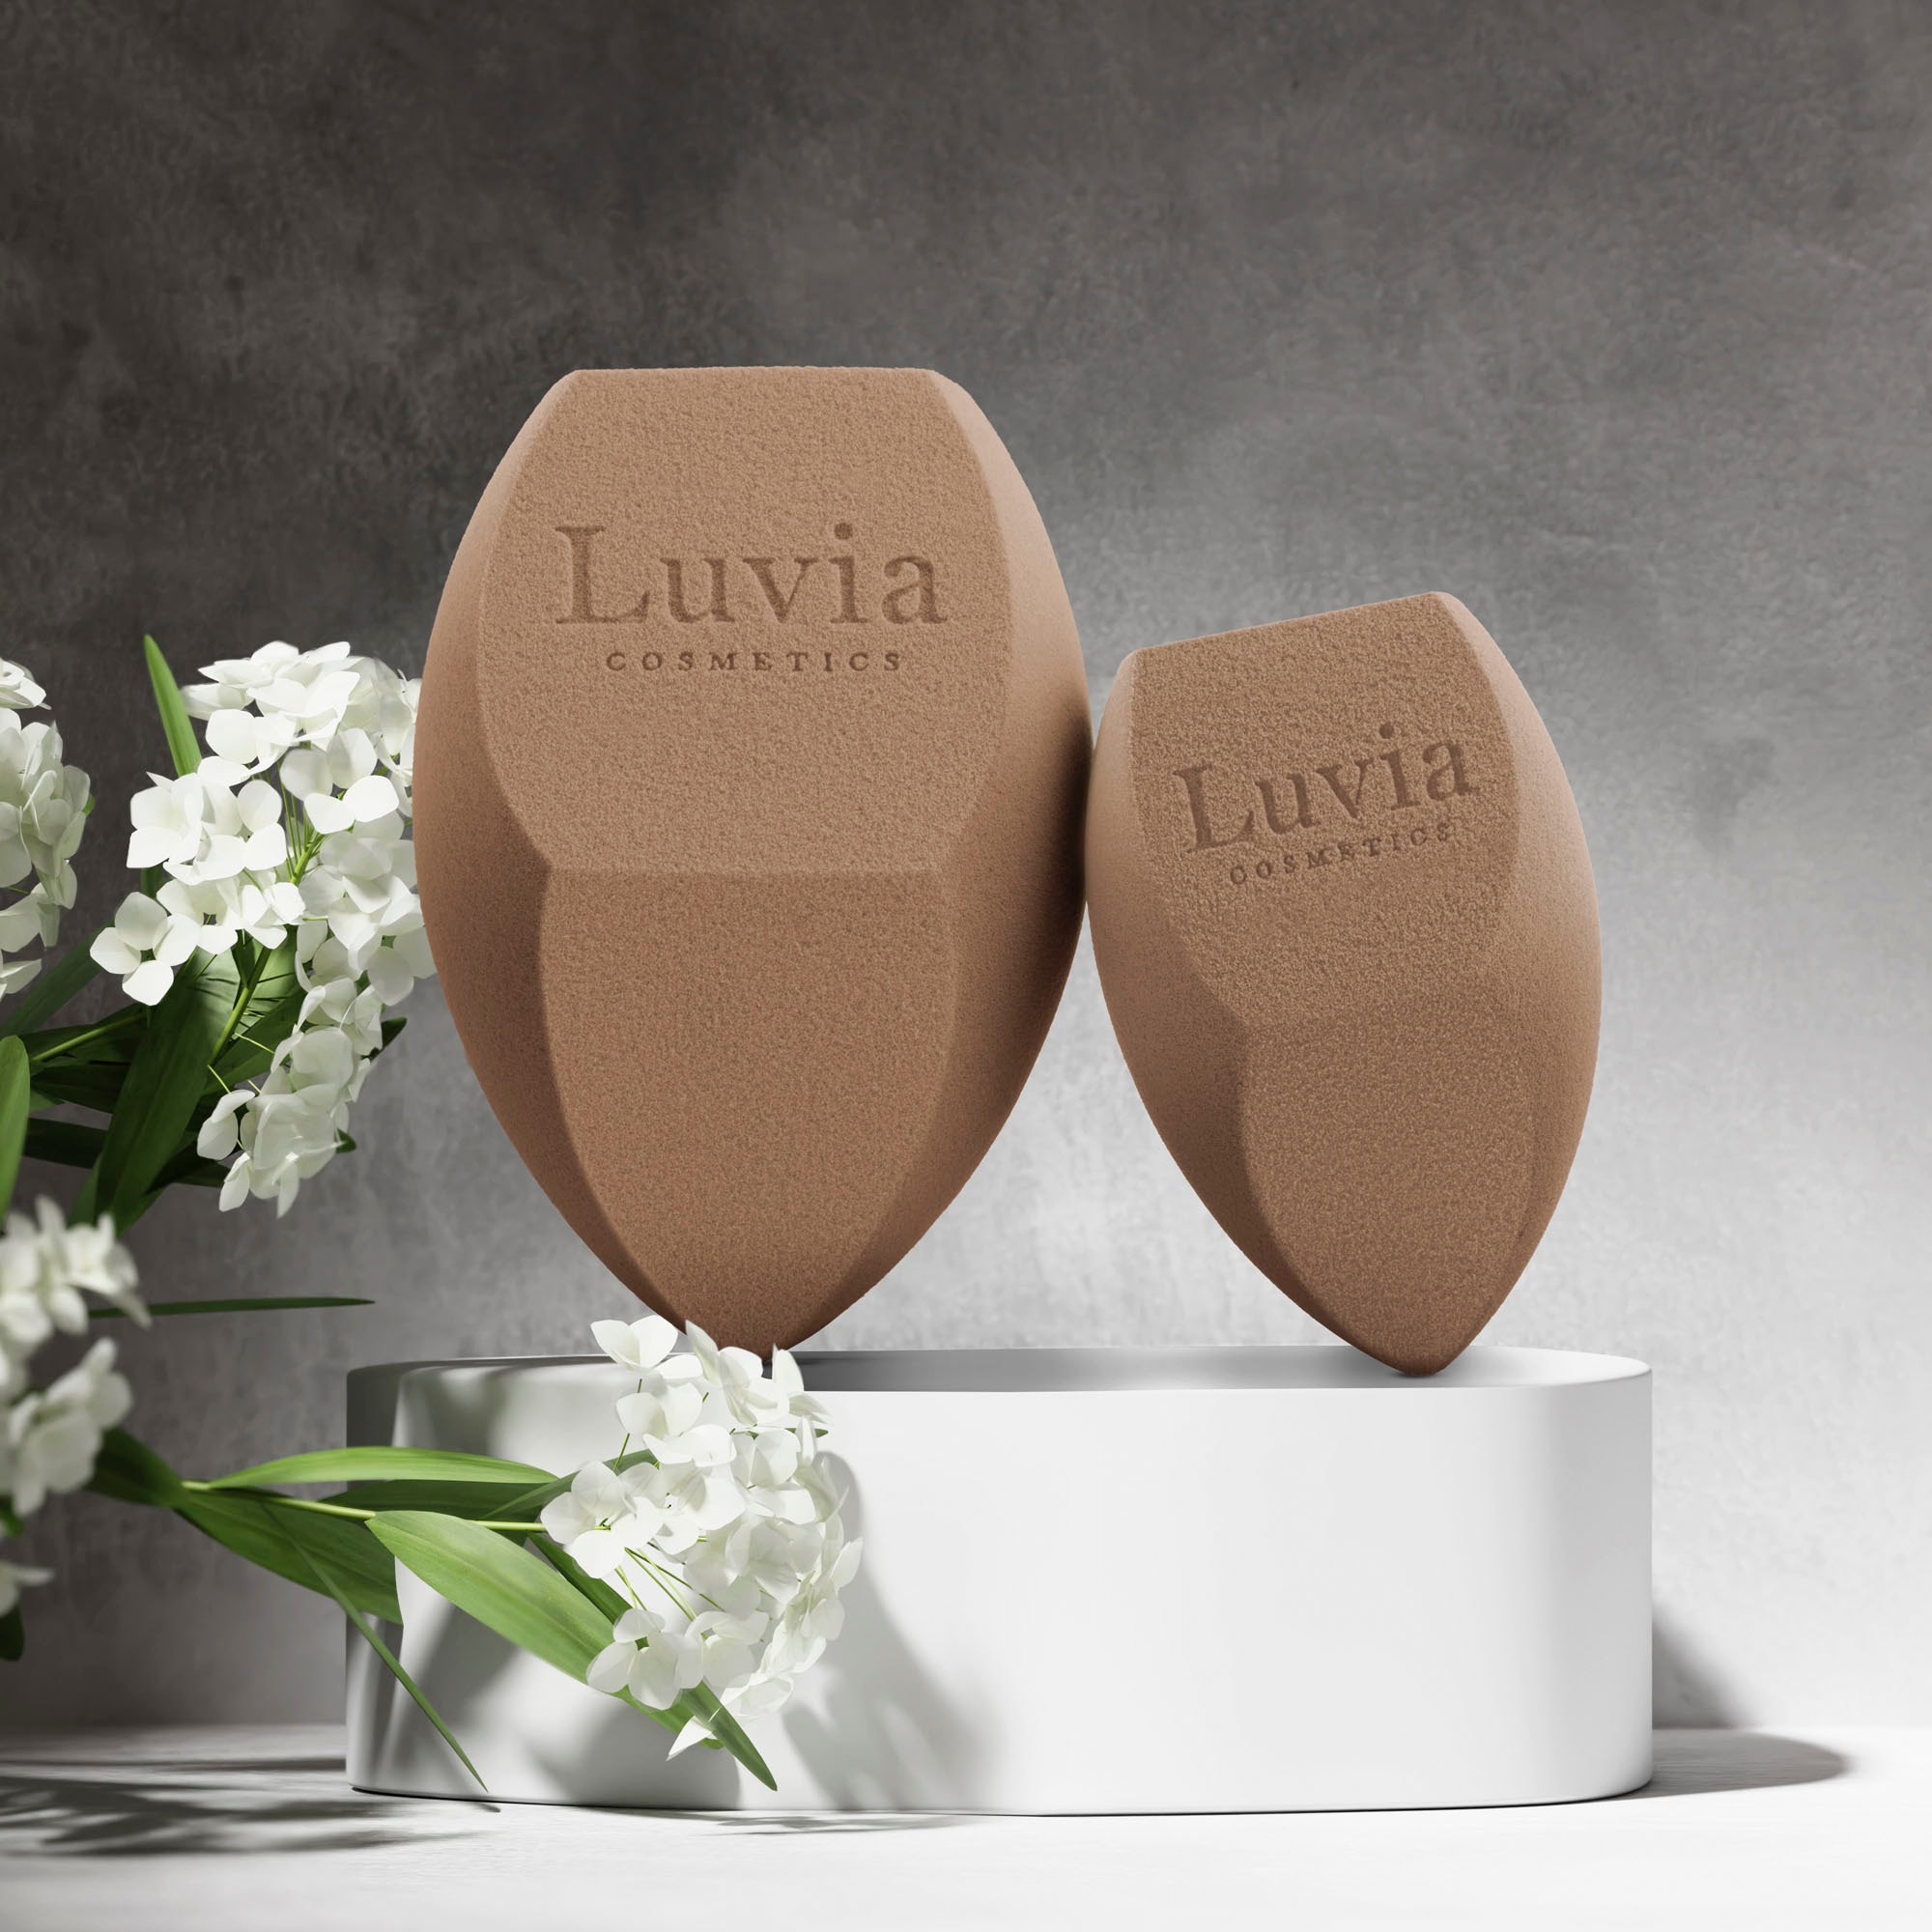 Luvia Cosmetics Make-up Schwamm »Diamond Sponge Elegance«, (Set, 2 tlg.), feinporige Oberfläche für natürliches Hautbild